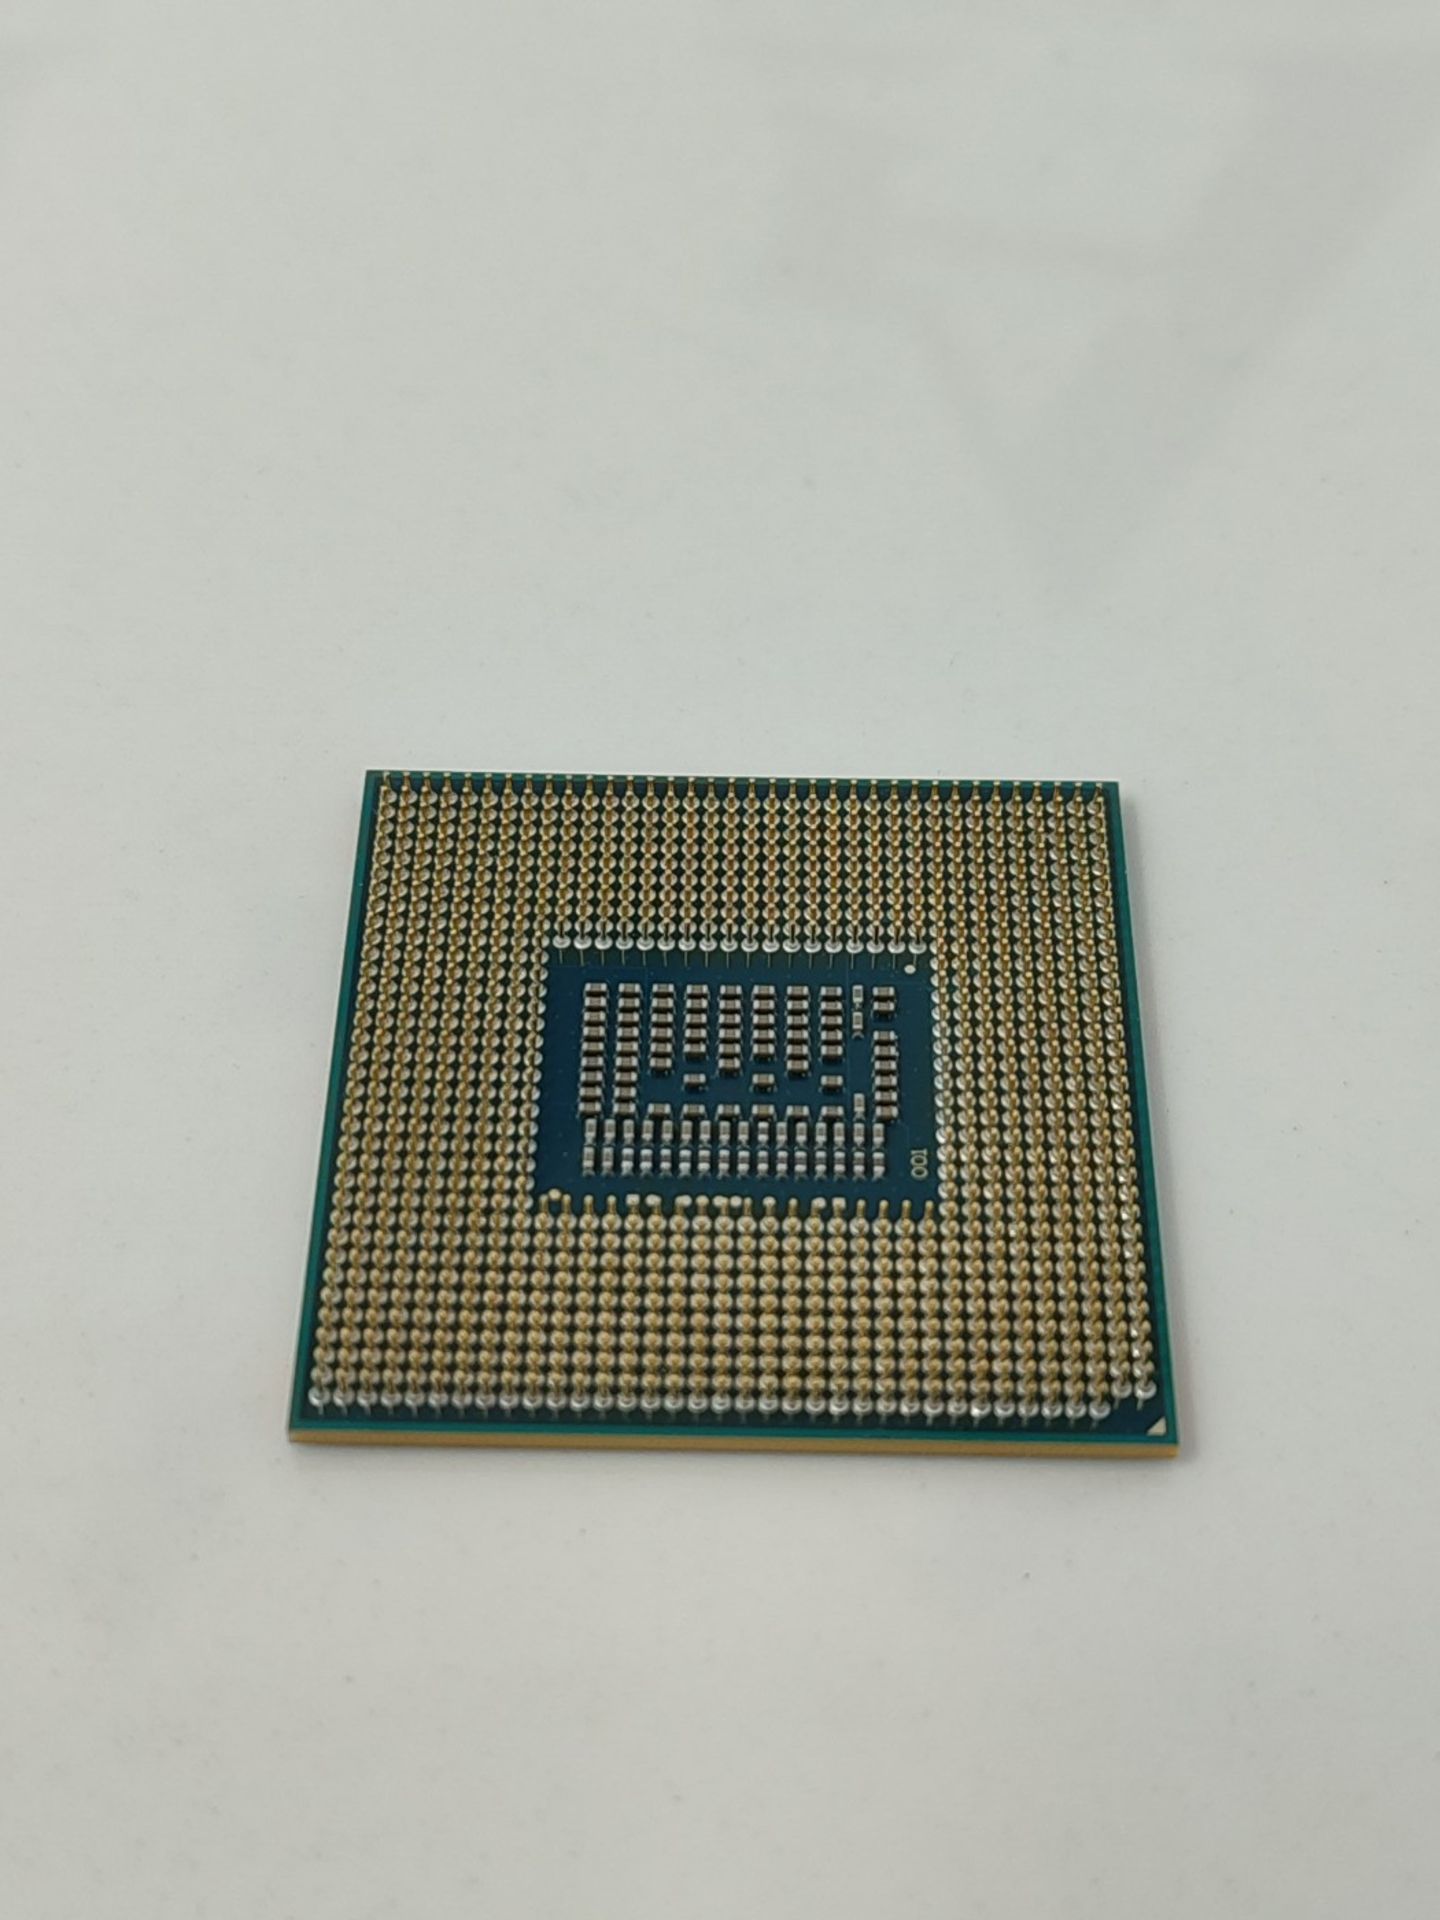 RRP £307.00 Intel 3740QM Core i7 Processor (2.70GHz, 6M Cache, 4 Core) - Image 2 of 2